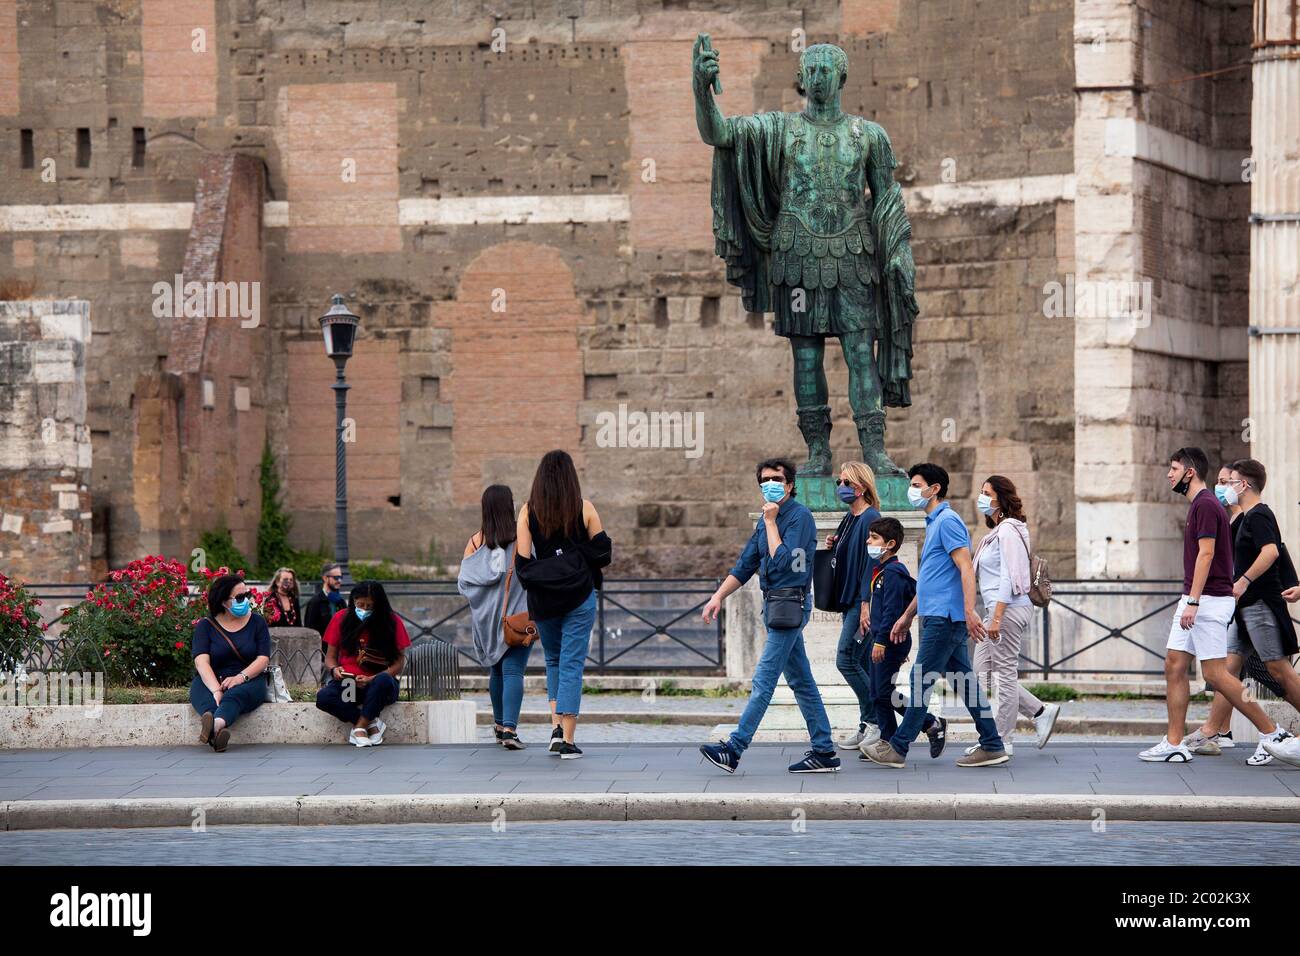 Les personnes portant un masque protecteur, se promènent le long de la via dei Fori Imperiali dans le centre de Rome le 02 juin 2020, alors que l'Italie commence à relâcher son verrouillage, pendant le confinement du pays visant à freiner la propagation de l'infection par le COVID-19, causée par le nouveau coronavirus. Banque D'Images